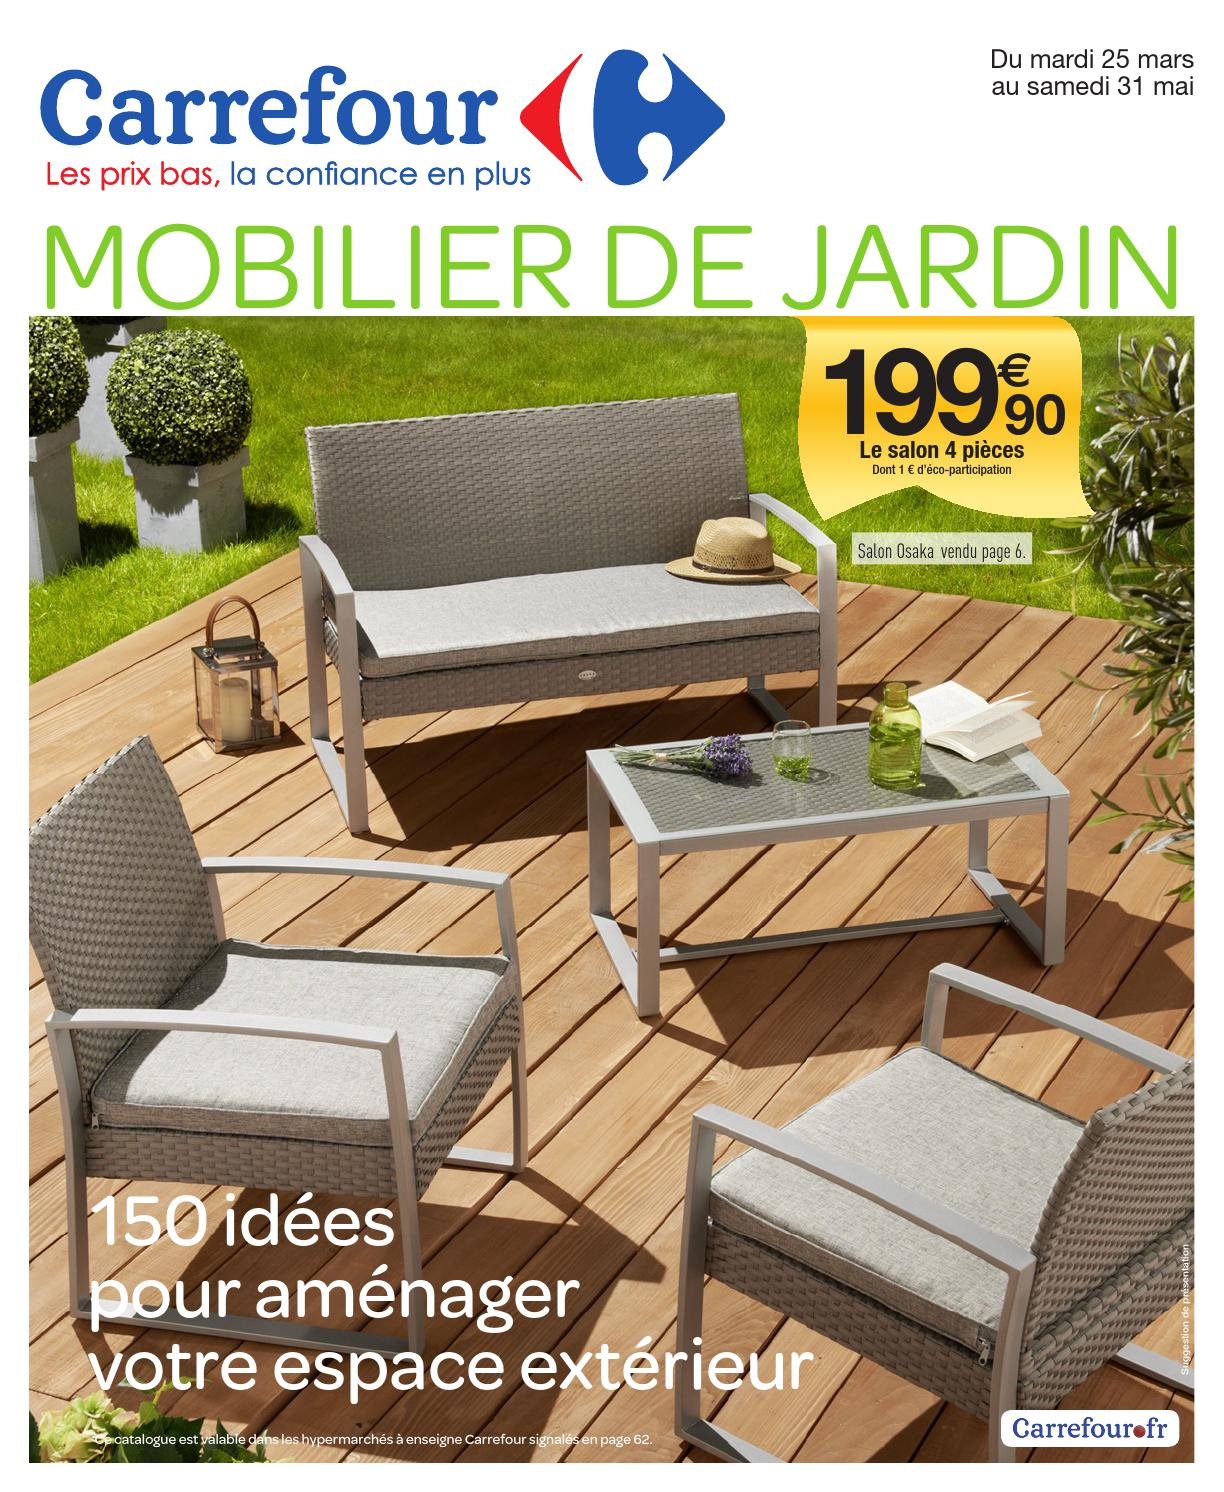 Catalogue Carrefour - 25.03-31.05.2014 By Joe Monroe - Issuu intérieur Tonnelles De Jardin Carrefour